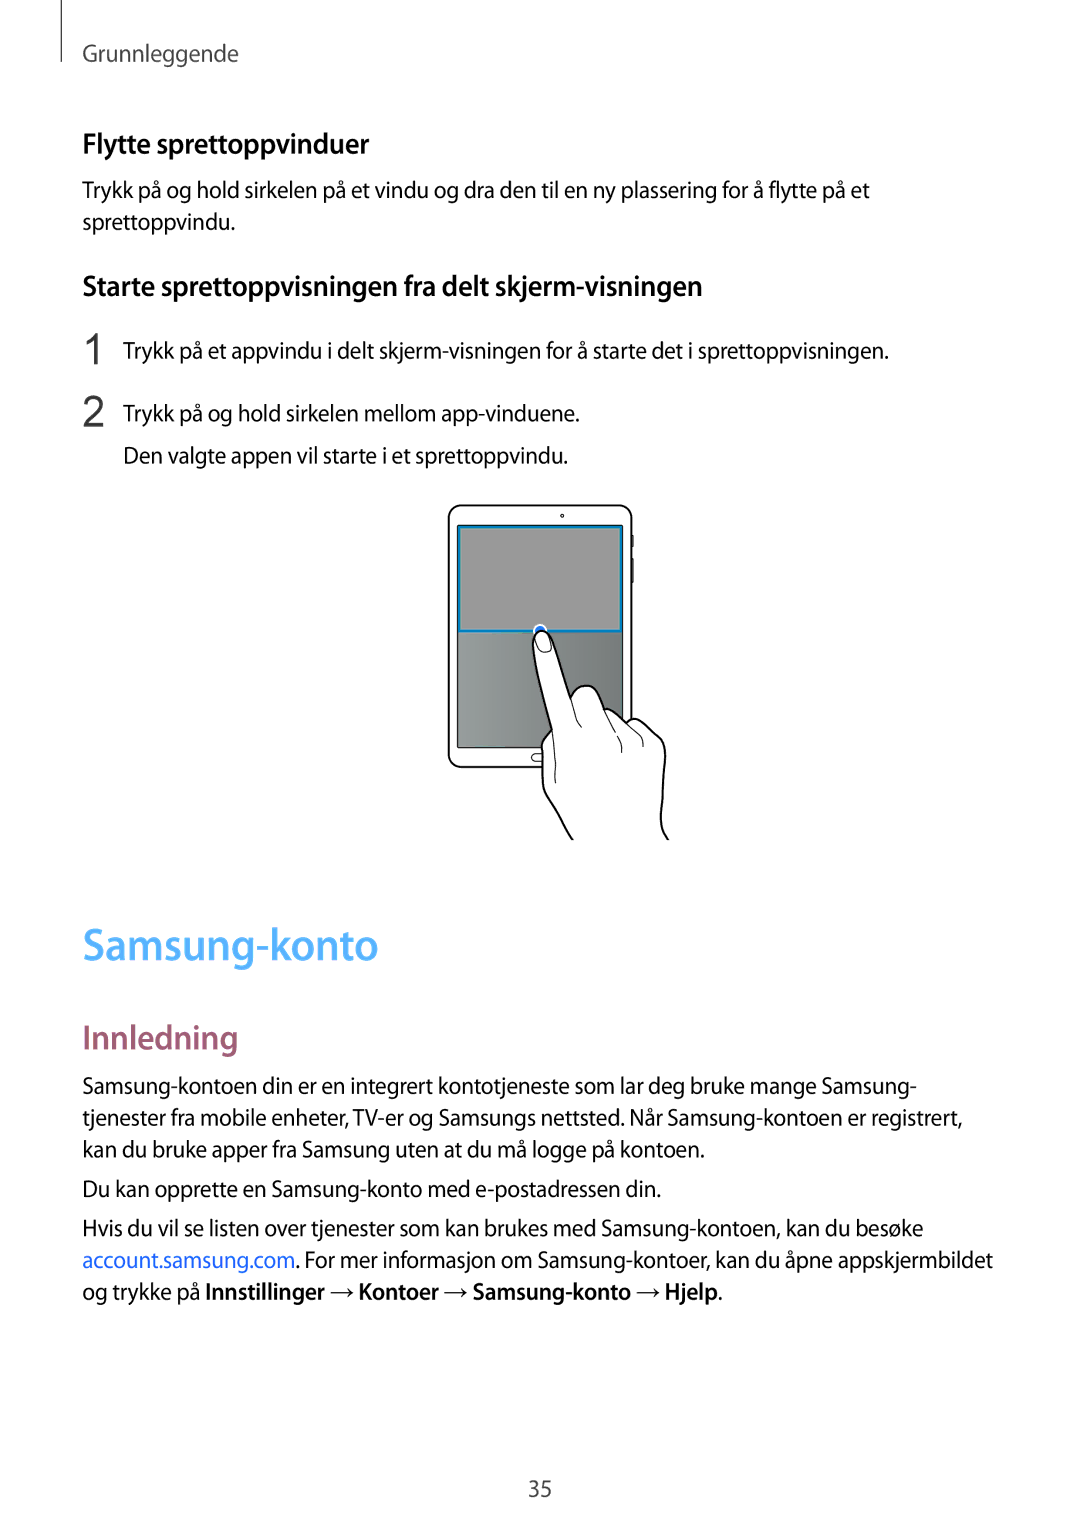 Samsung SM-T710NZWENEE manual Samsung-konto, Flytte sprettoppvinduer, Starte sprettoppvisningen fra delt skjerm-visningen 